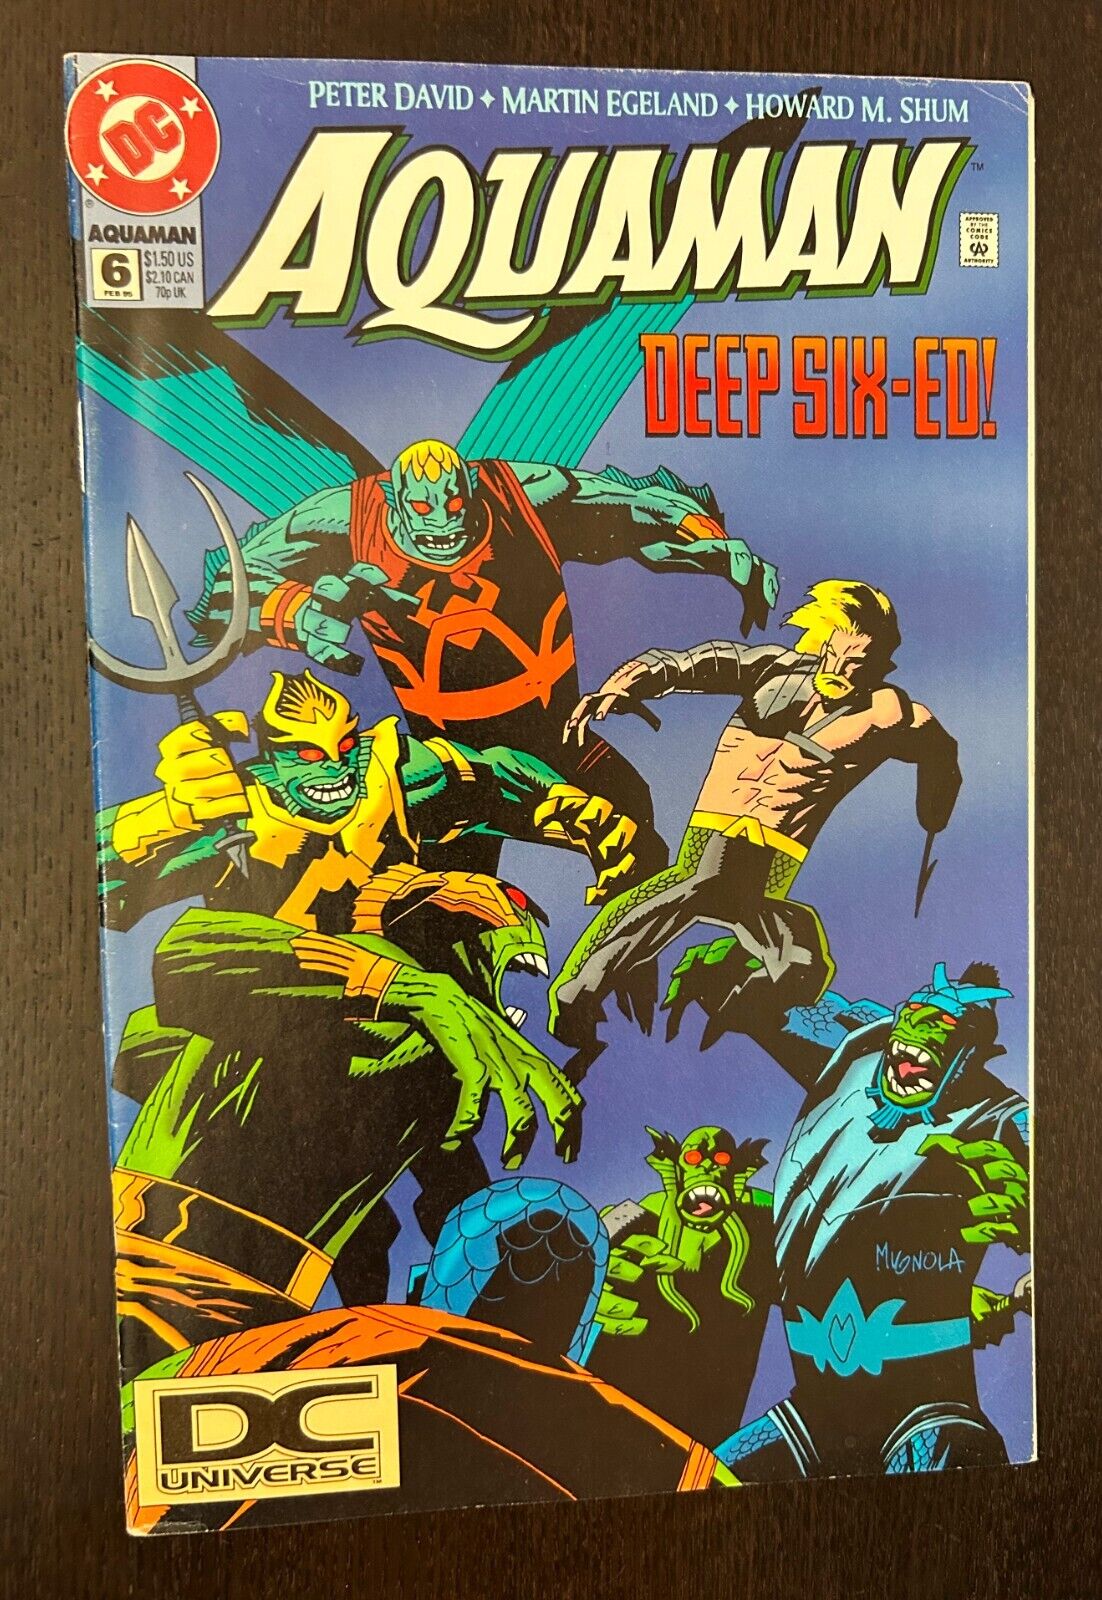 AQUAMAN #6 (DC Comics 1995) -- DC UNIVERSE LOGO VARIANT -- VF-